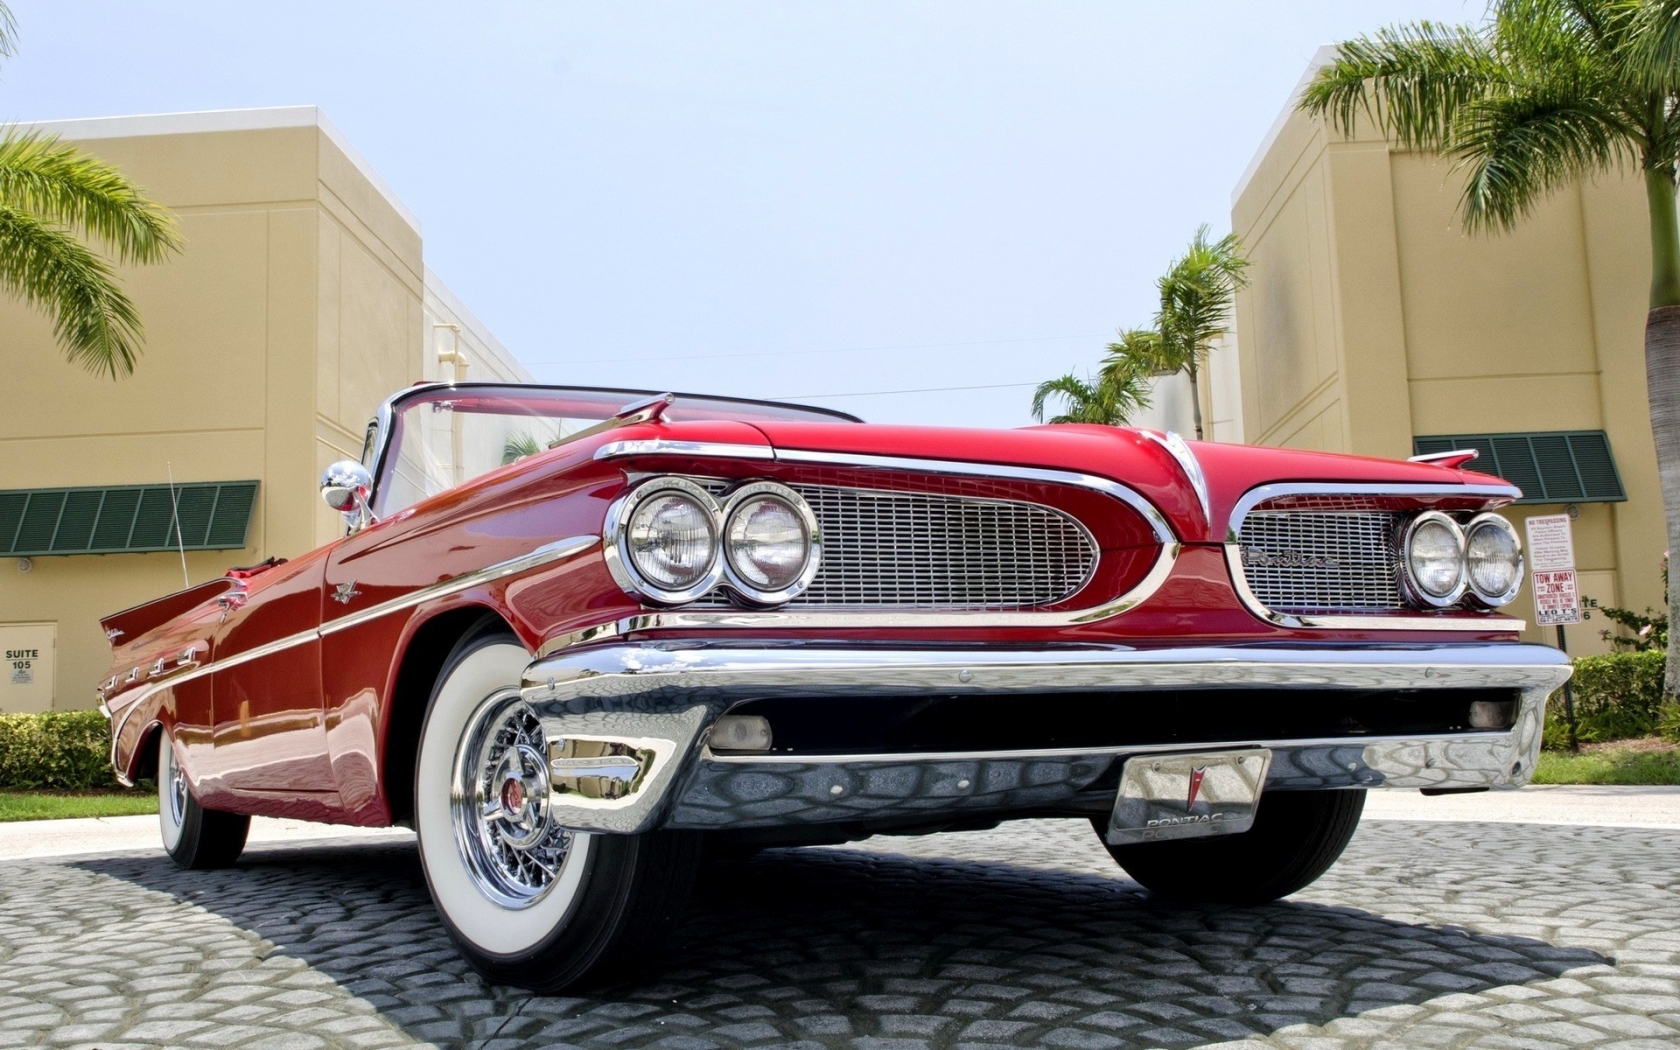 1959 Red Pontiac Cabrio for 1680 x 1050 widescreen resolution